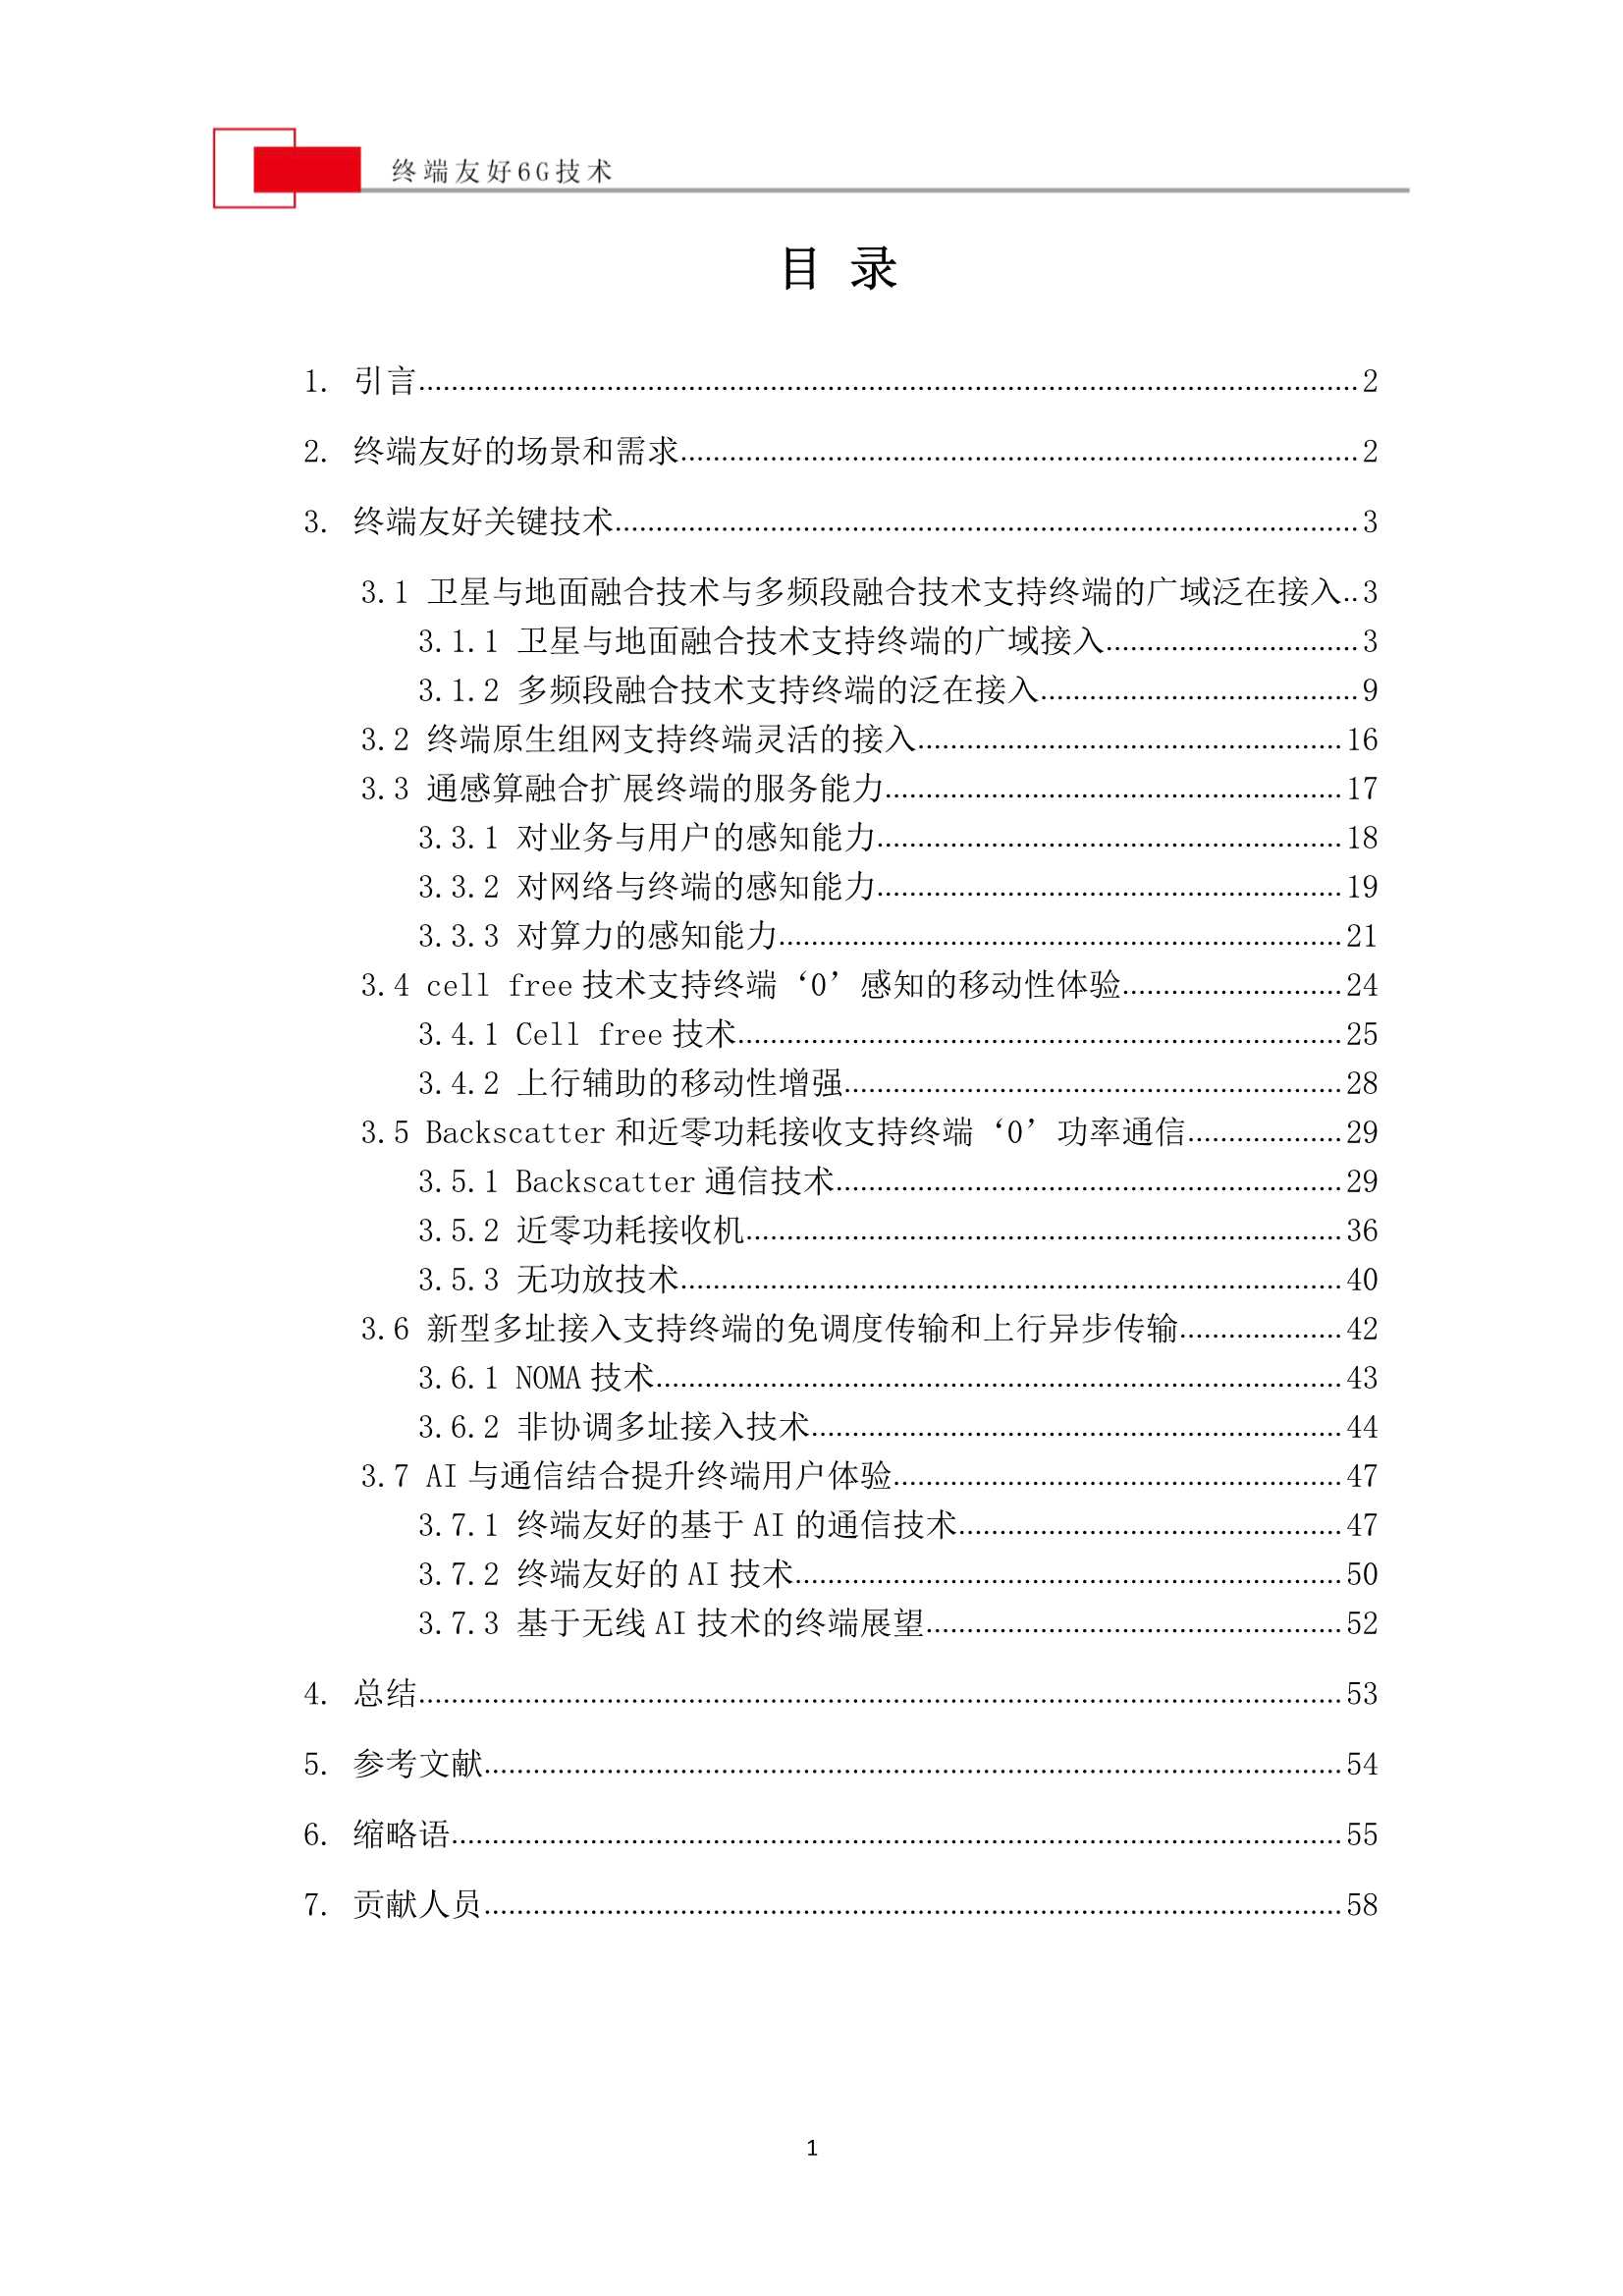 终端友好6G技术 中文-2022.04-60页